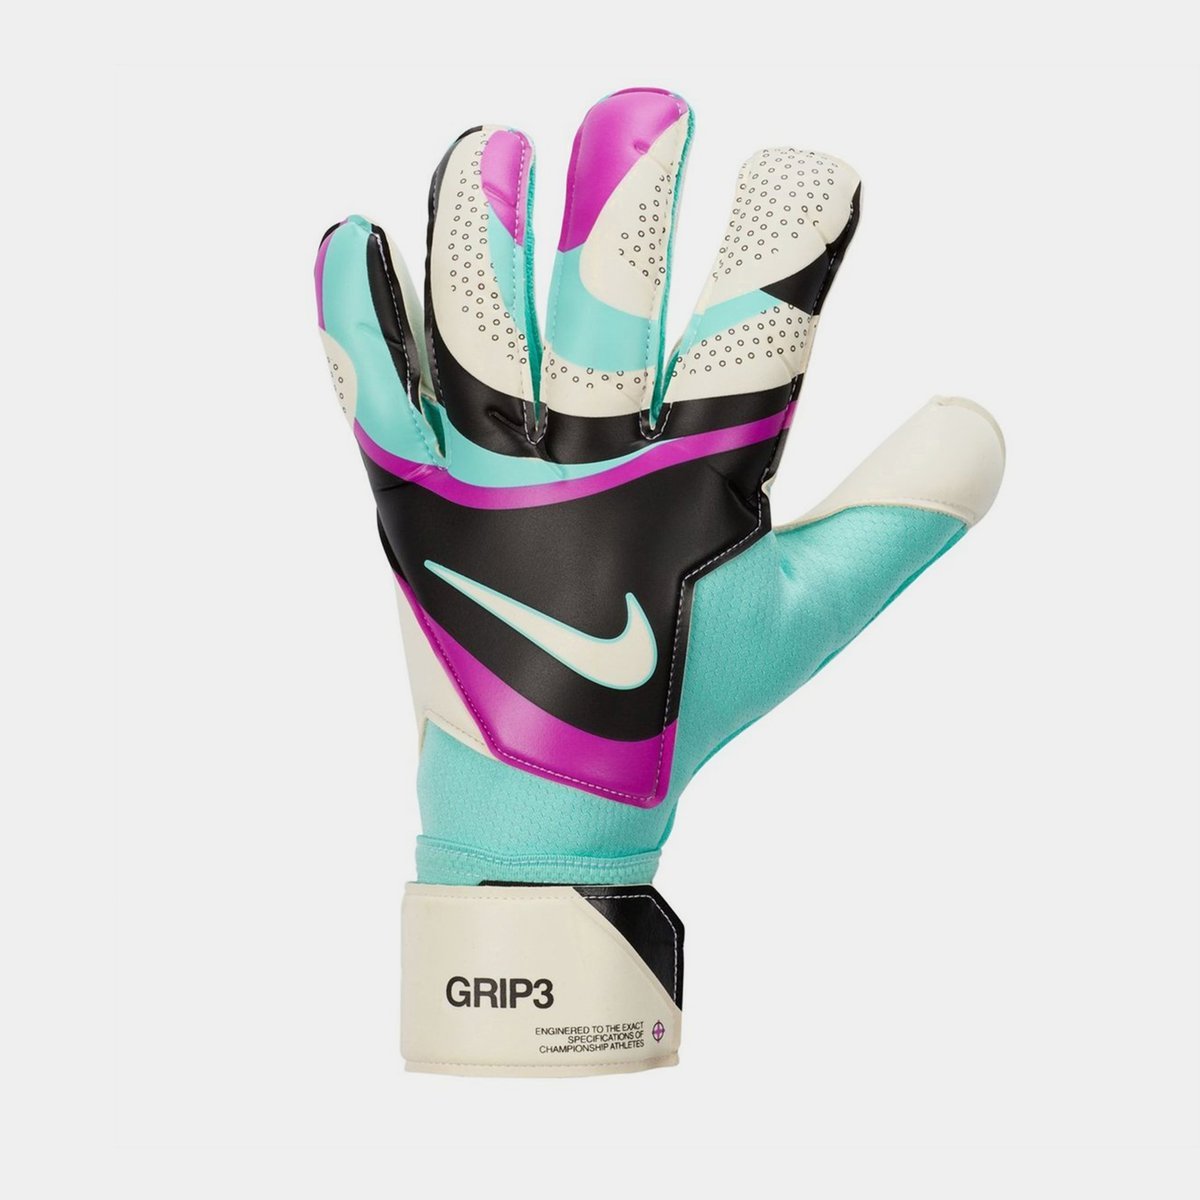 Goalie Glove Spray - 30ml Antislip Grip Boost pour les gants de football,  gant colle gardien de but poignée pour les gants de gardien de but dans des  conditions humides